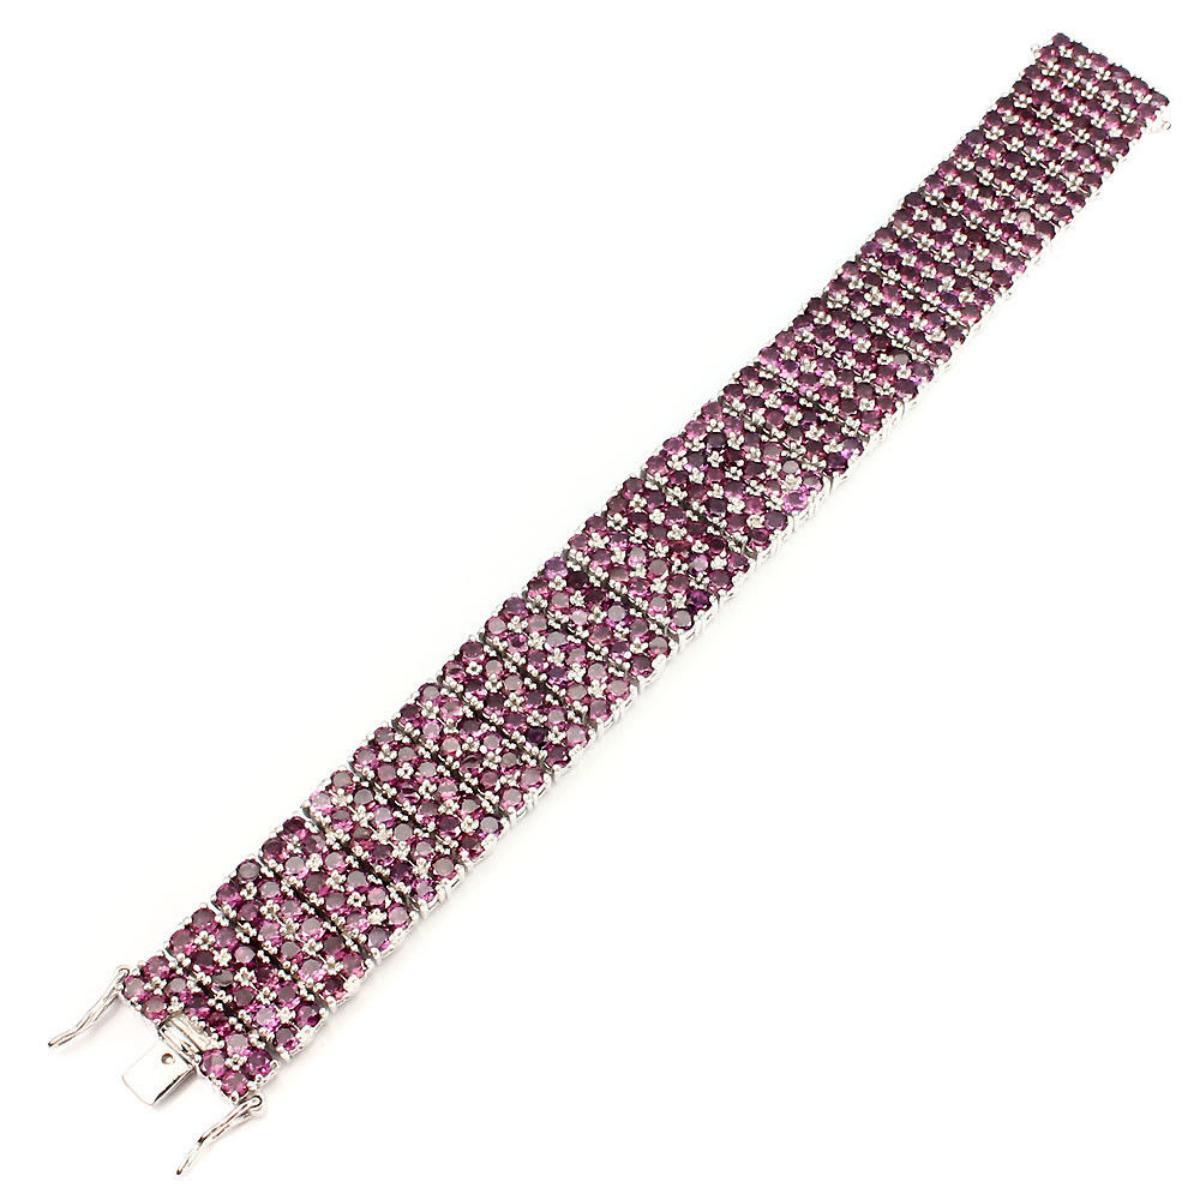 Natural Stunning Raspberry Rhodolite Garnet Bracelet